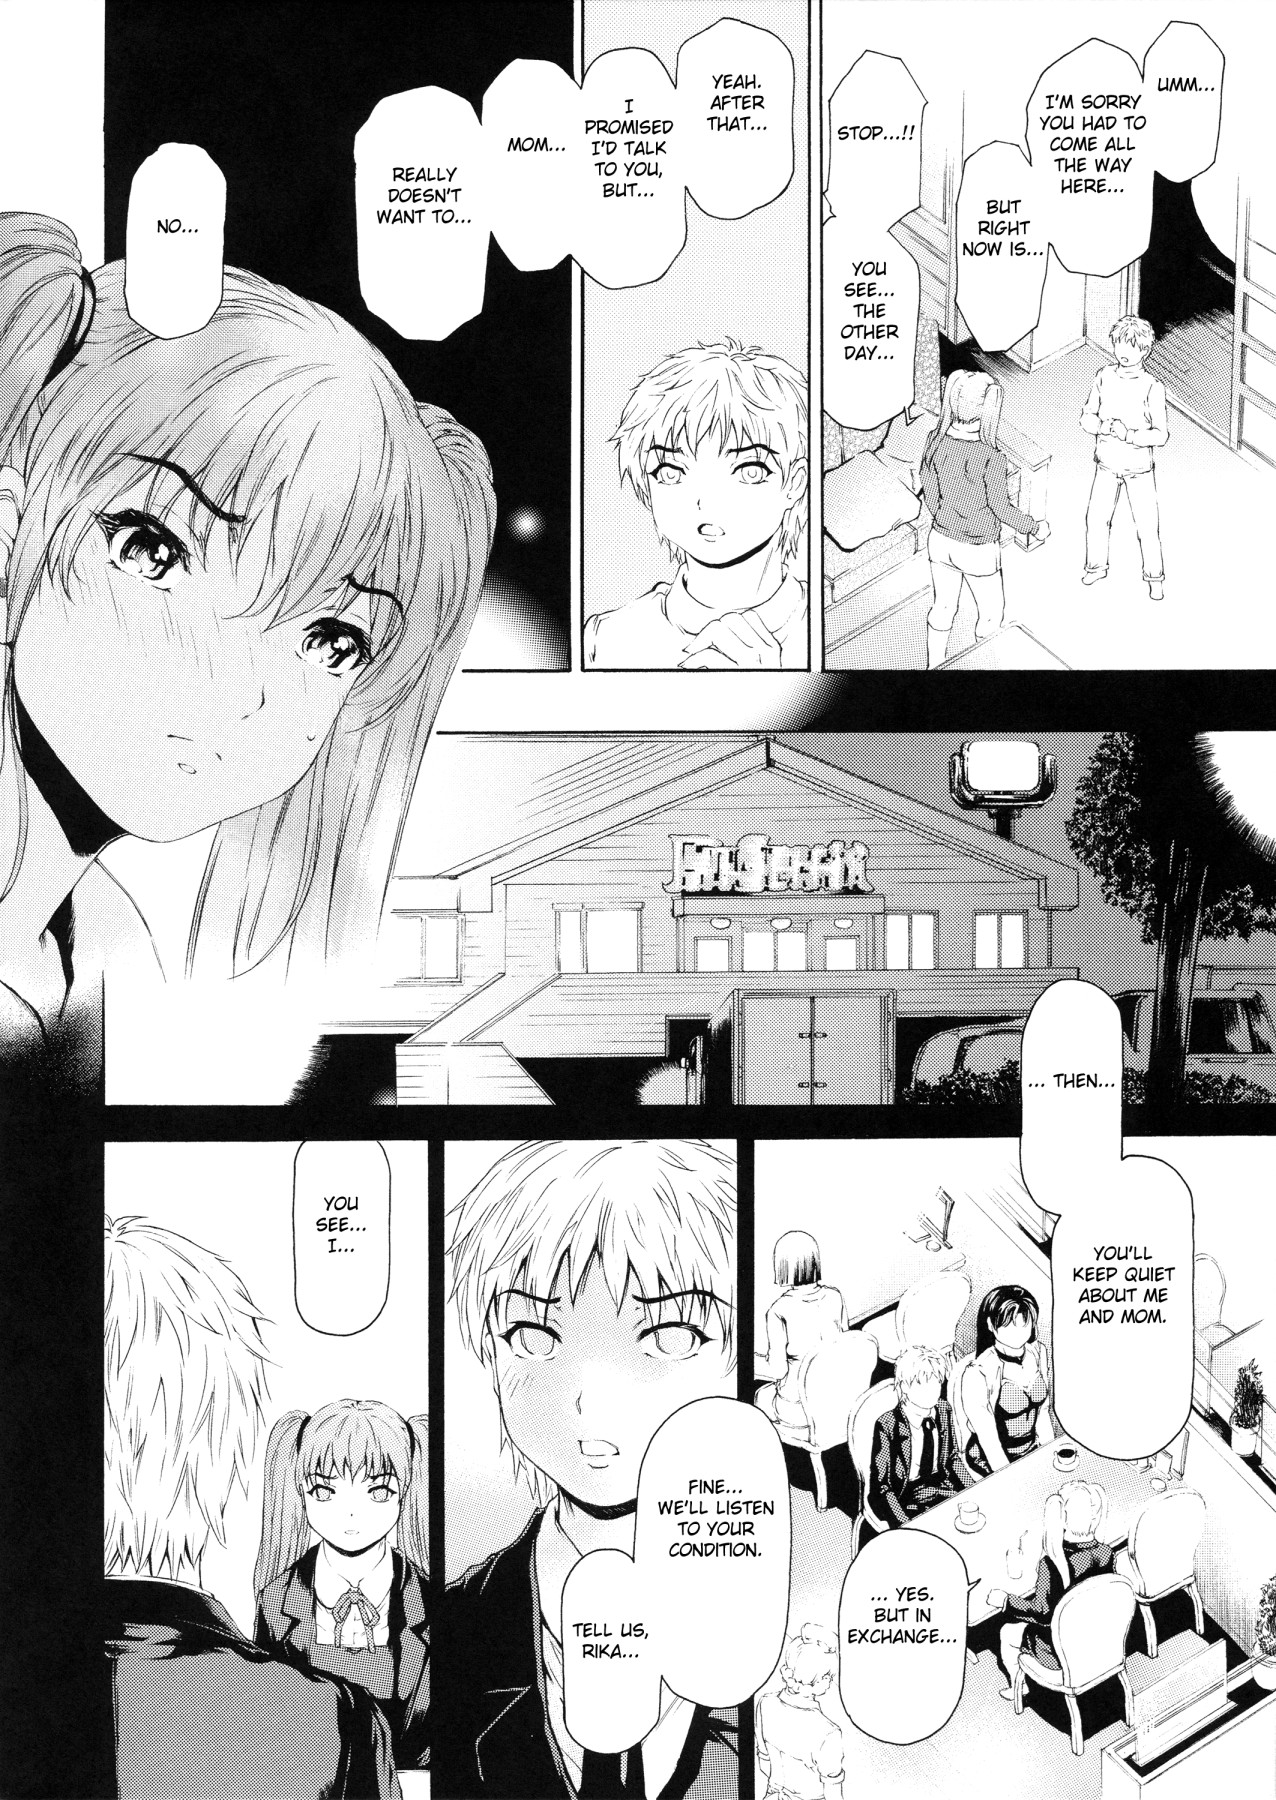 Hentai Manga Comic-9 To 5 Lover  11-Read-3